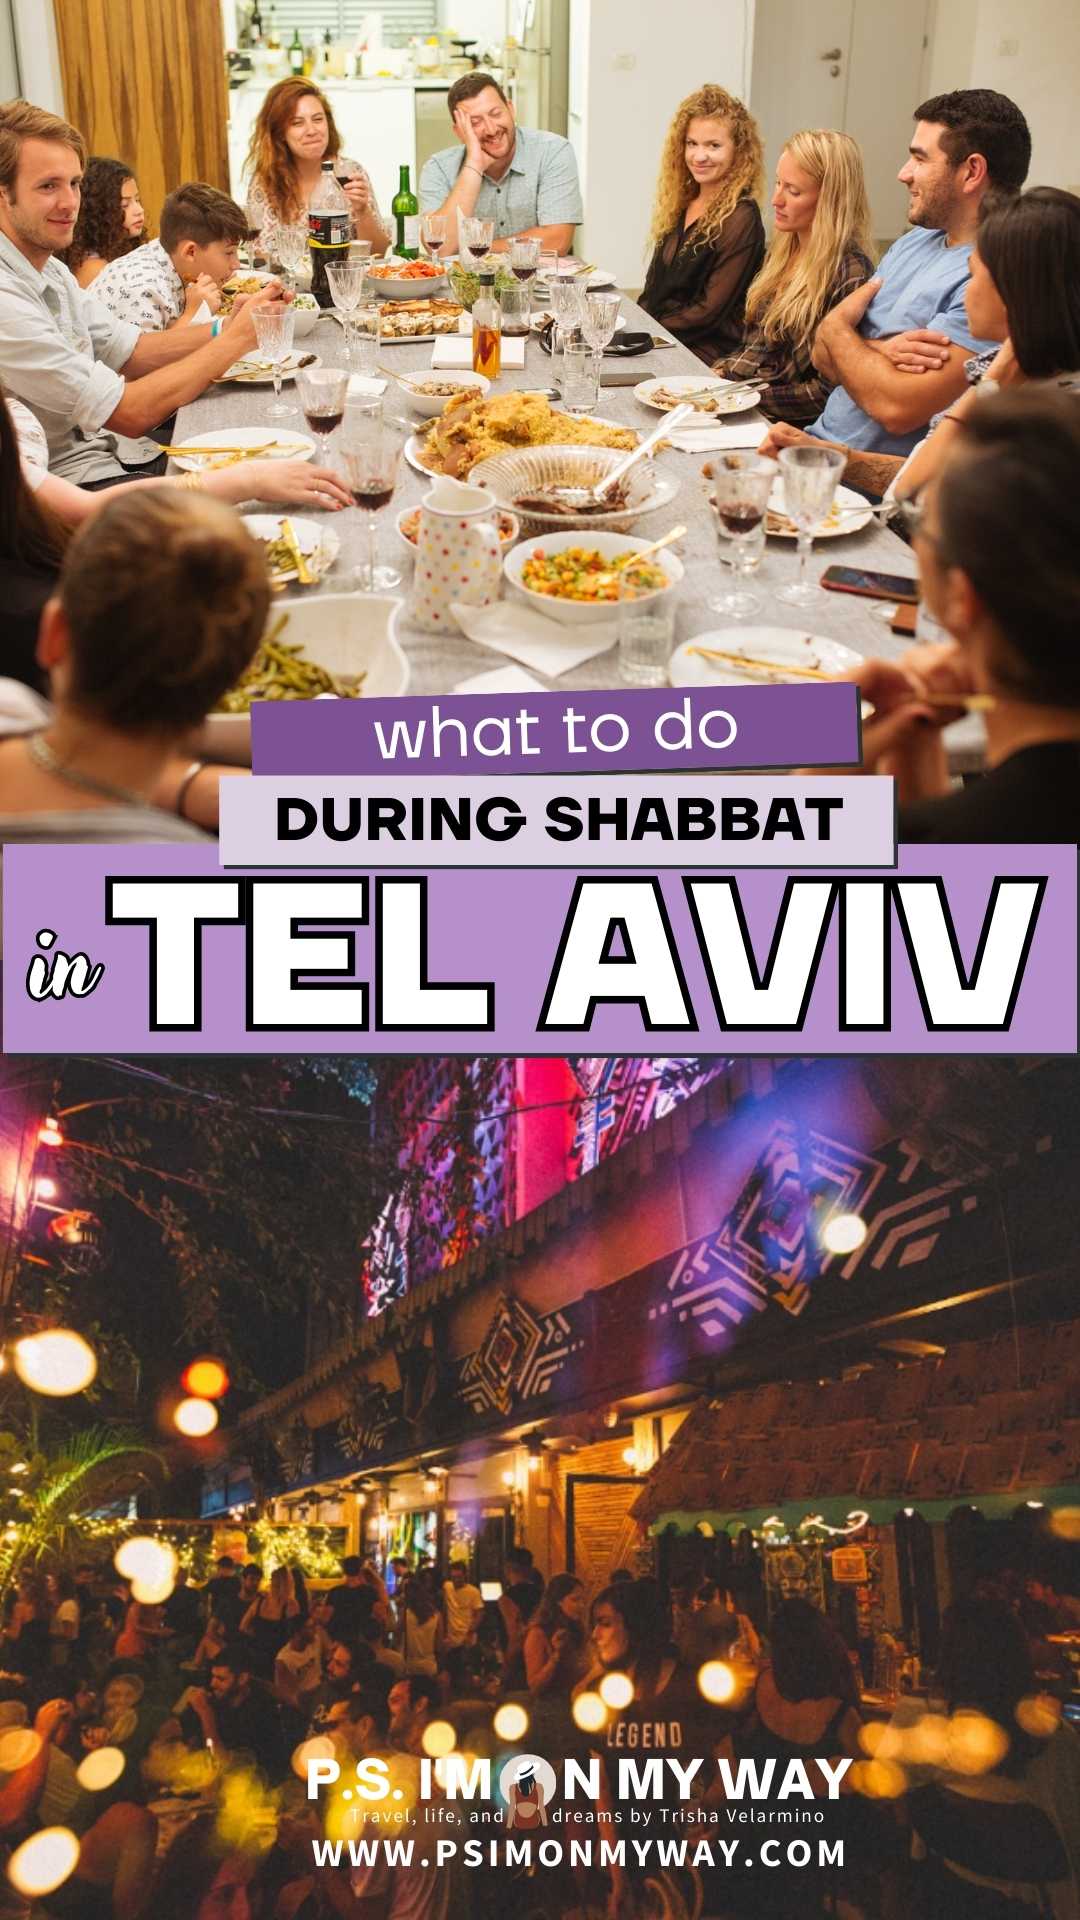 shabbat in tel aviv